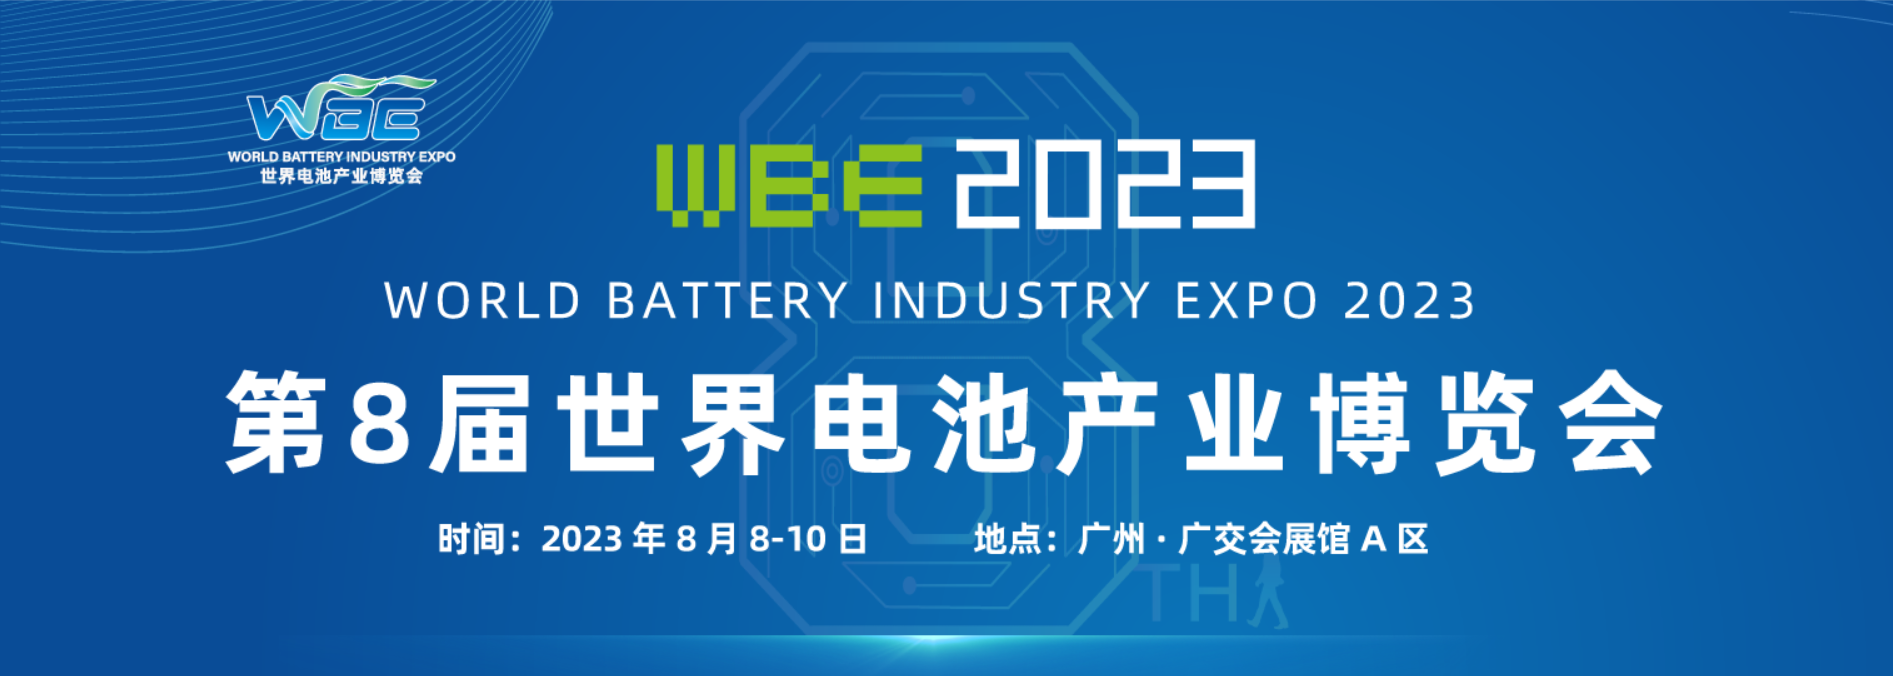 WBE2023世界电池储能产业博览会暨第8届亚太电池展